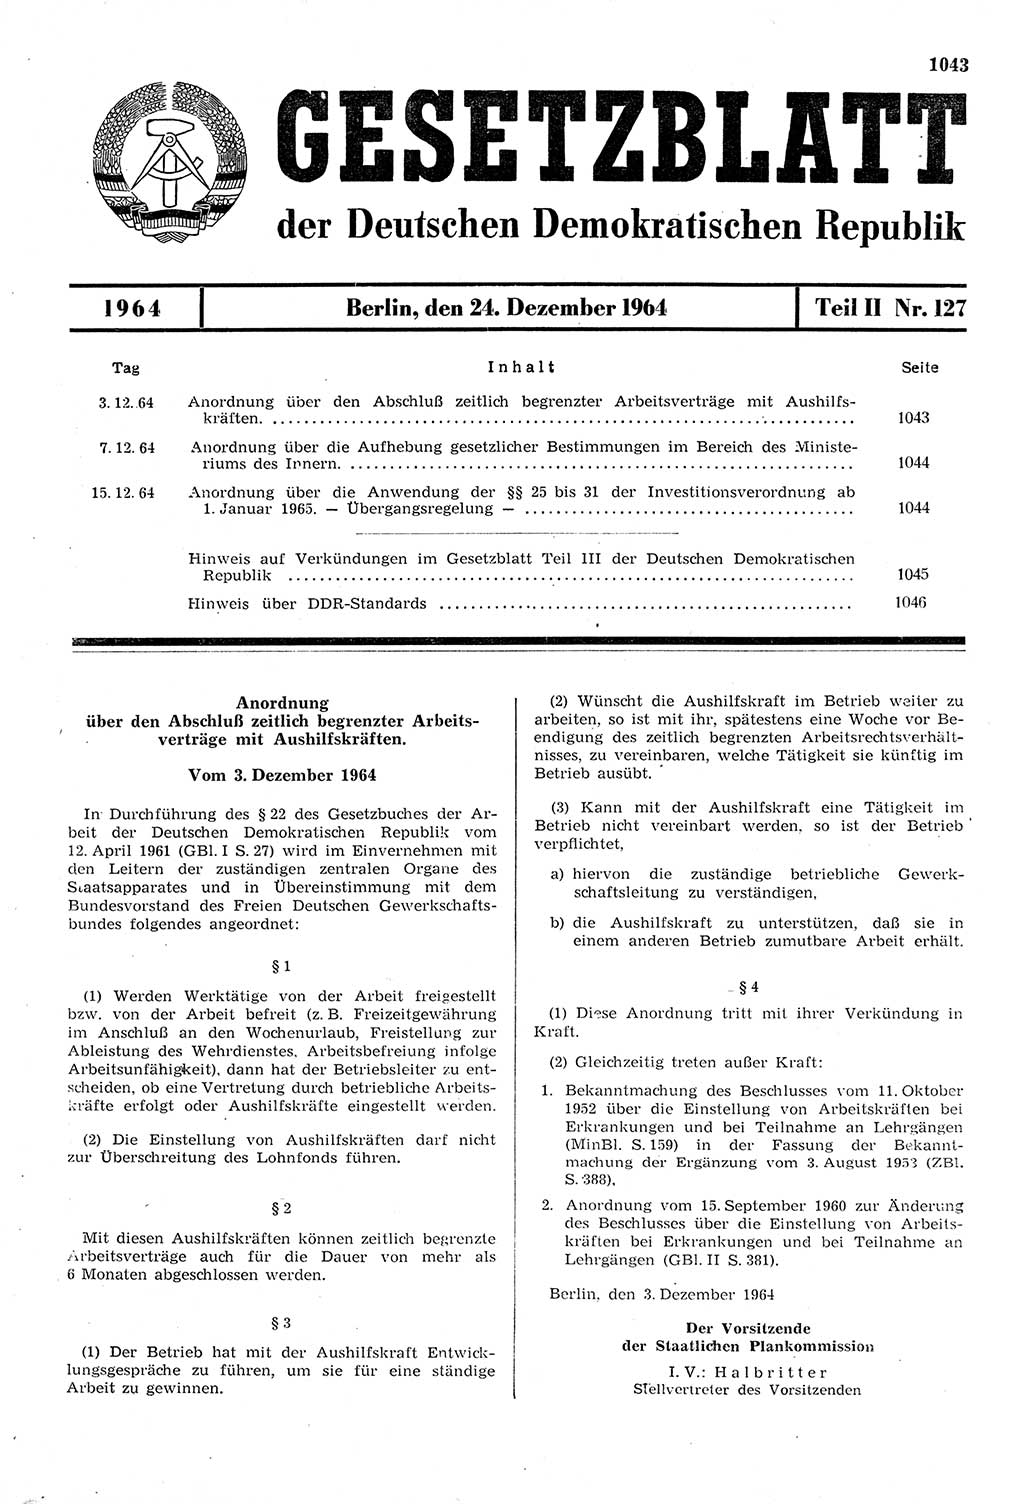 Gesetzblatt (GBl.) der Deutschen Demokratischen Republik (DDR) Teil ⅠⅠ 1964, Seite 1043 (GBl. DDR ⅠⅠ 1964, S. 1043)